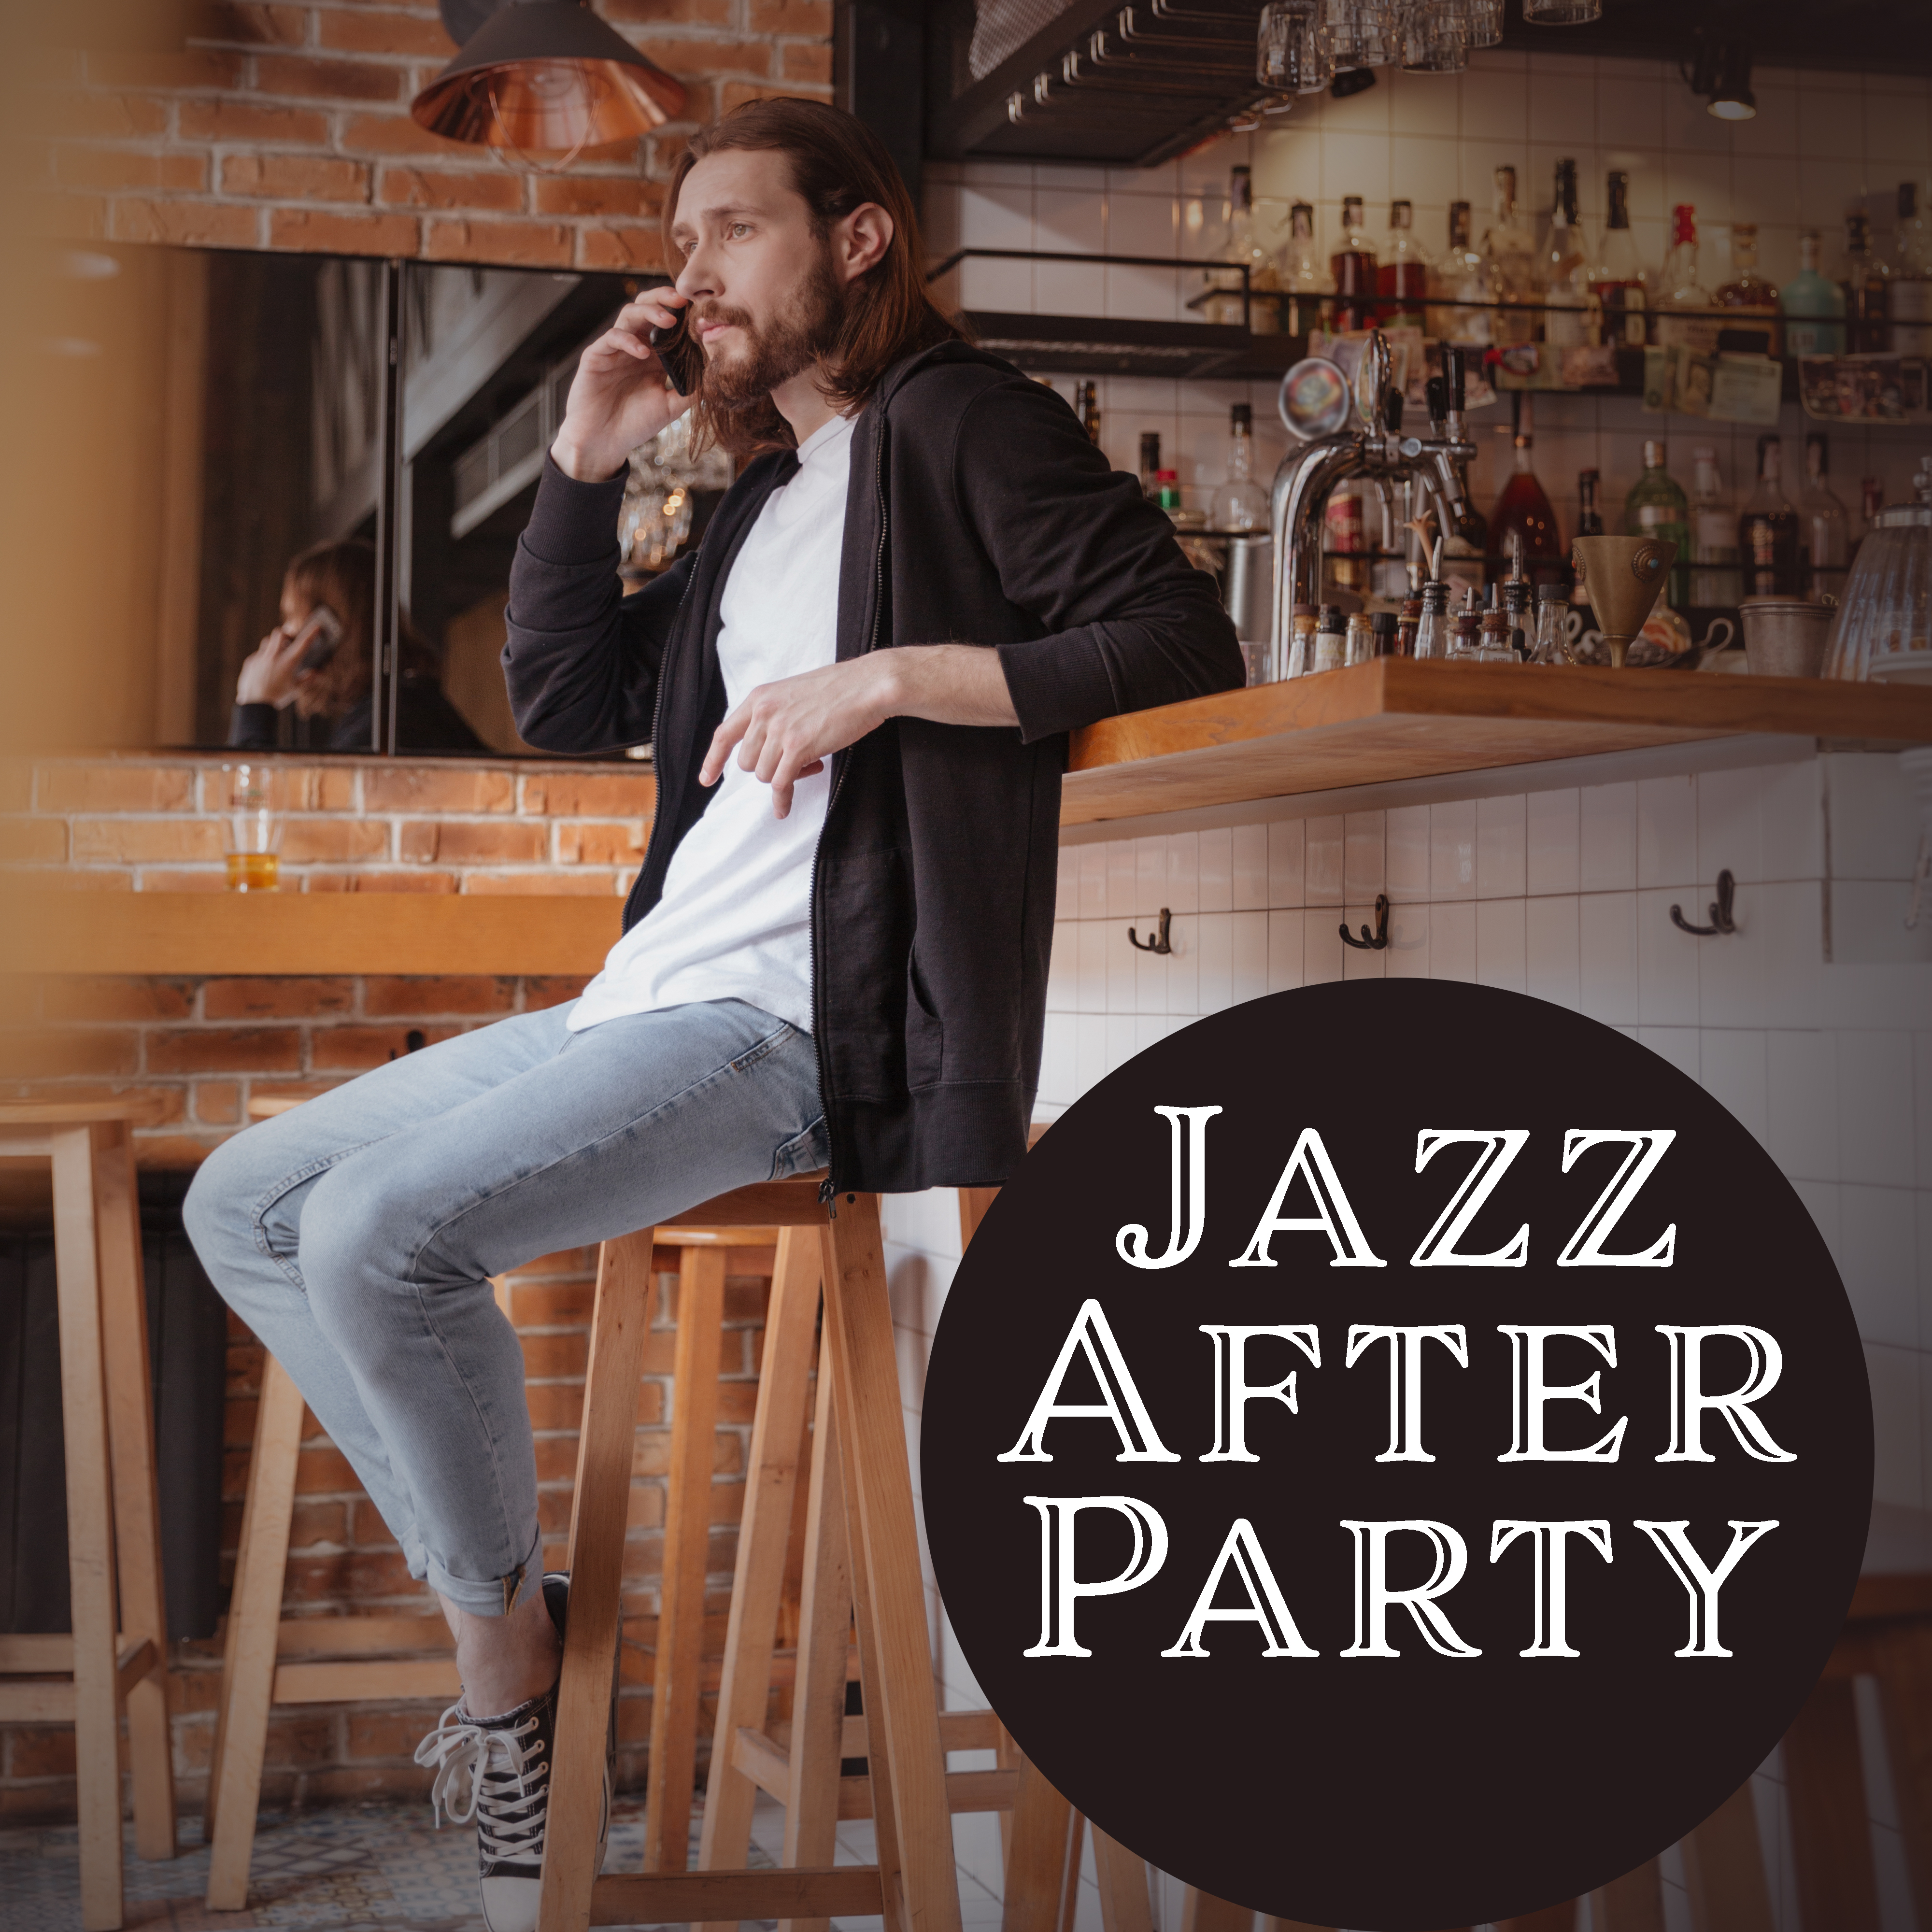 Jazz After Party – Jazz Lounge, Instrumental Music, Jazz 2017, Alternative Club Music